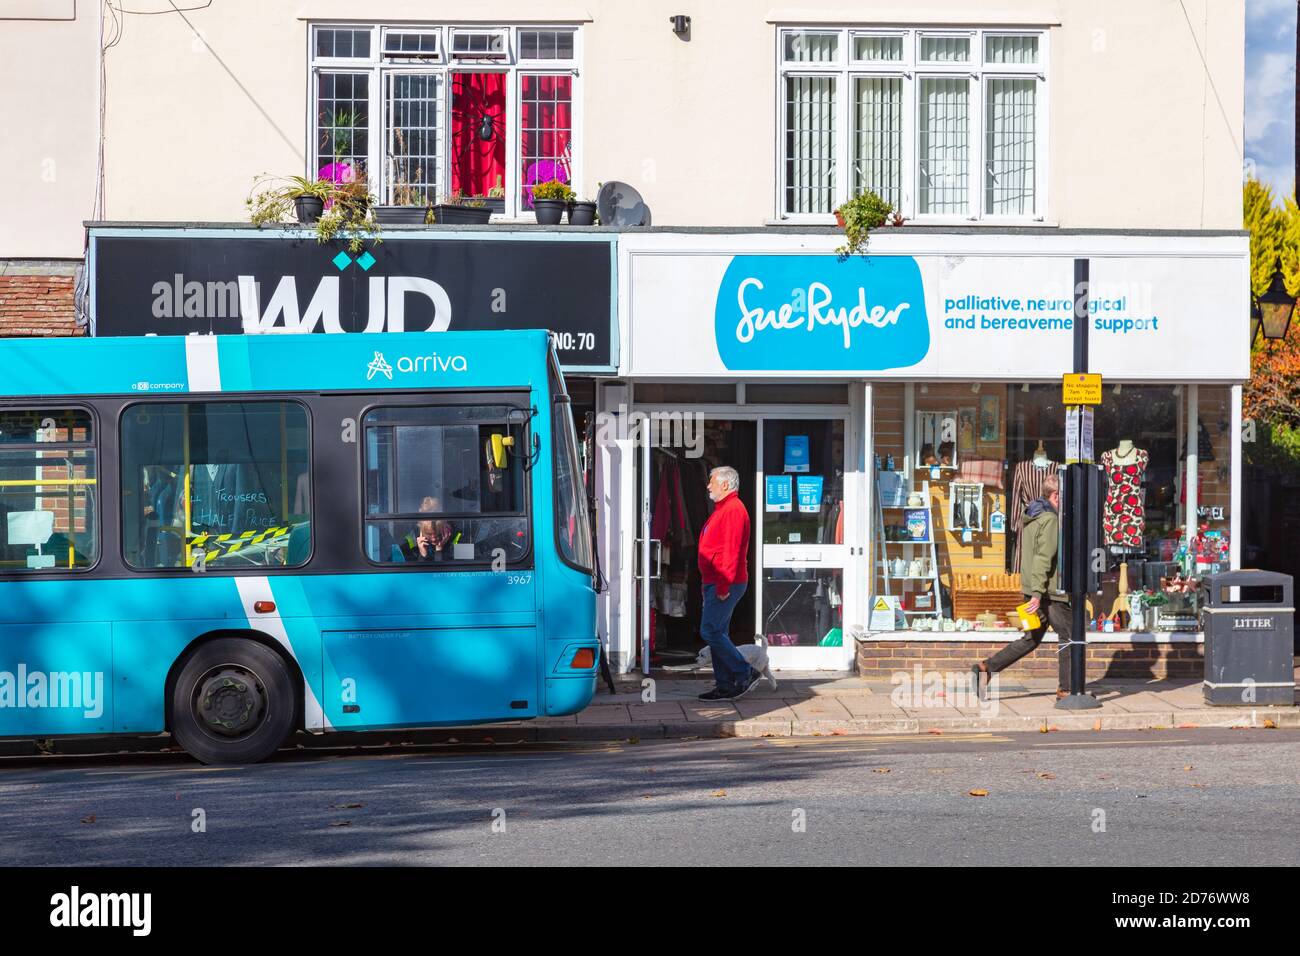 Un autobus blu parcheggiato all'esterno di un negozio di beneficenza sue Ryder con un cartello blu corrispondente, su Tenterden High Street, Kent, UK Foto Stock